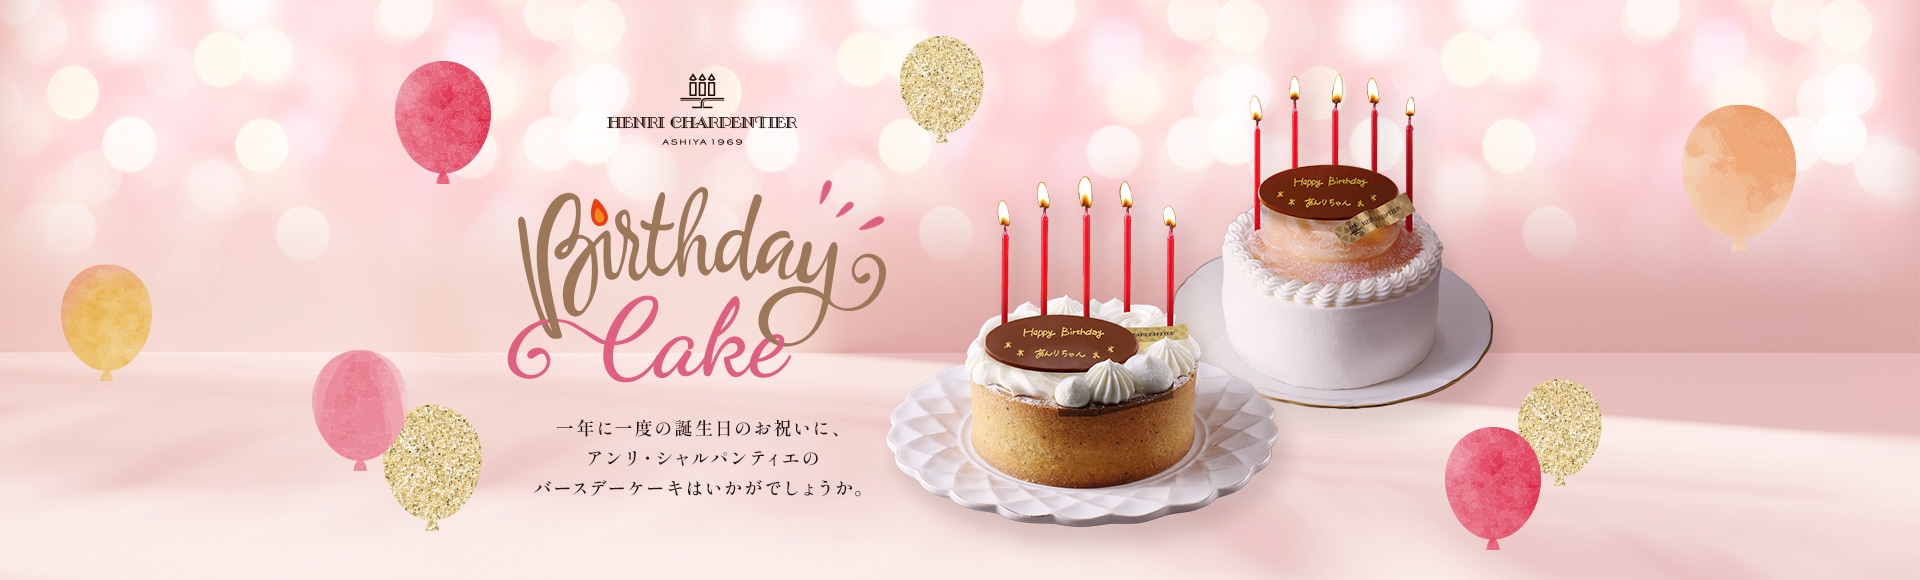 一年に一度の誕生日のお祝いに、アンリ・シャルパンティエのバースデーケーキはいかがでしょうか。